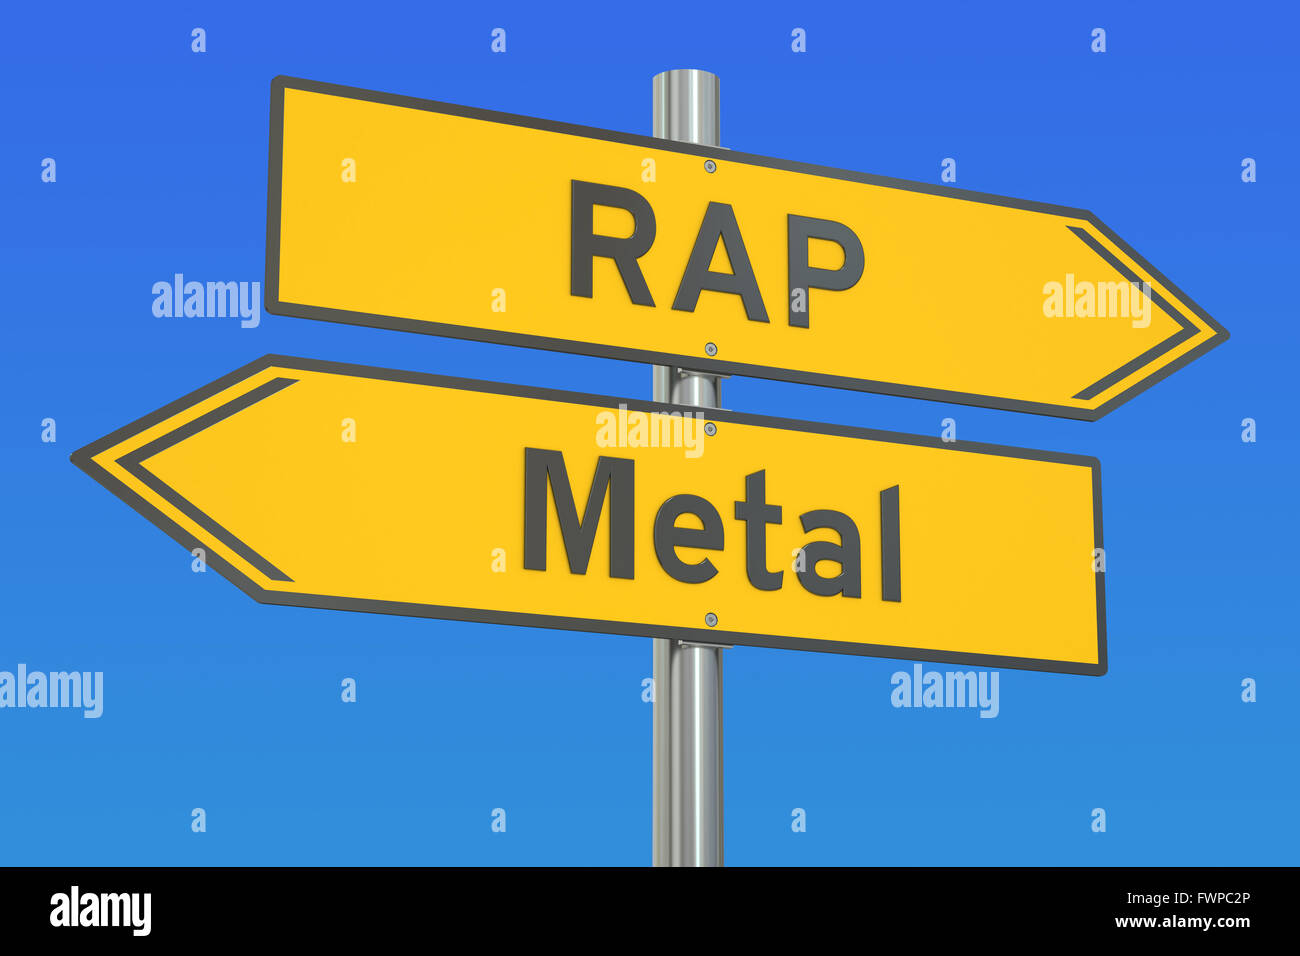 Rap versus Metal concept, 3D rendering Stock Photo